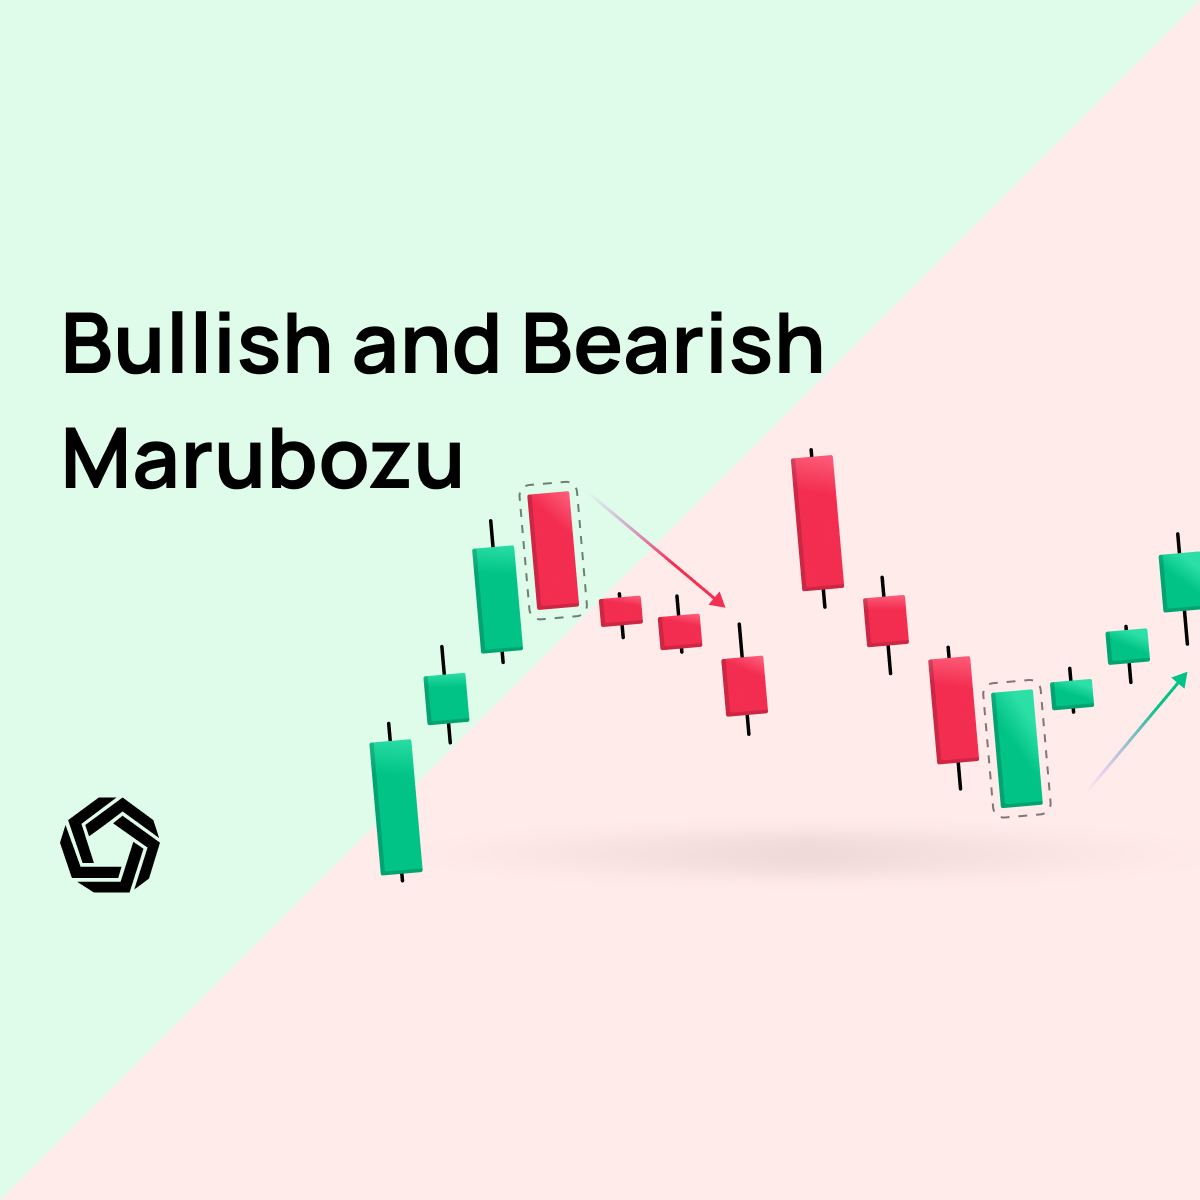 Bullish and Bearish Marubozu Patterns